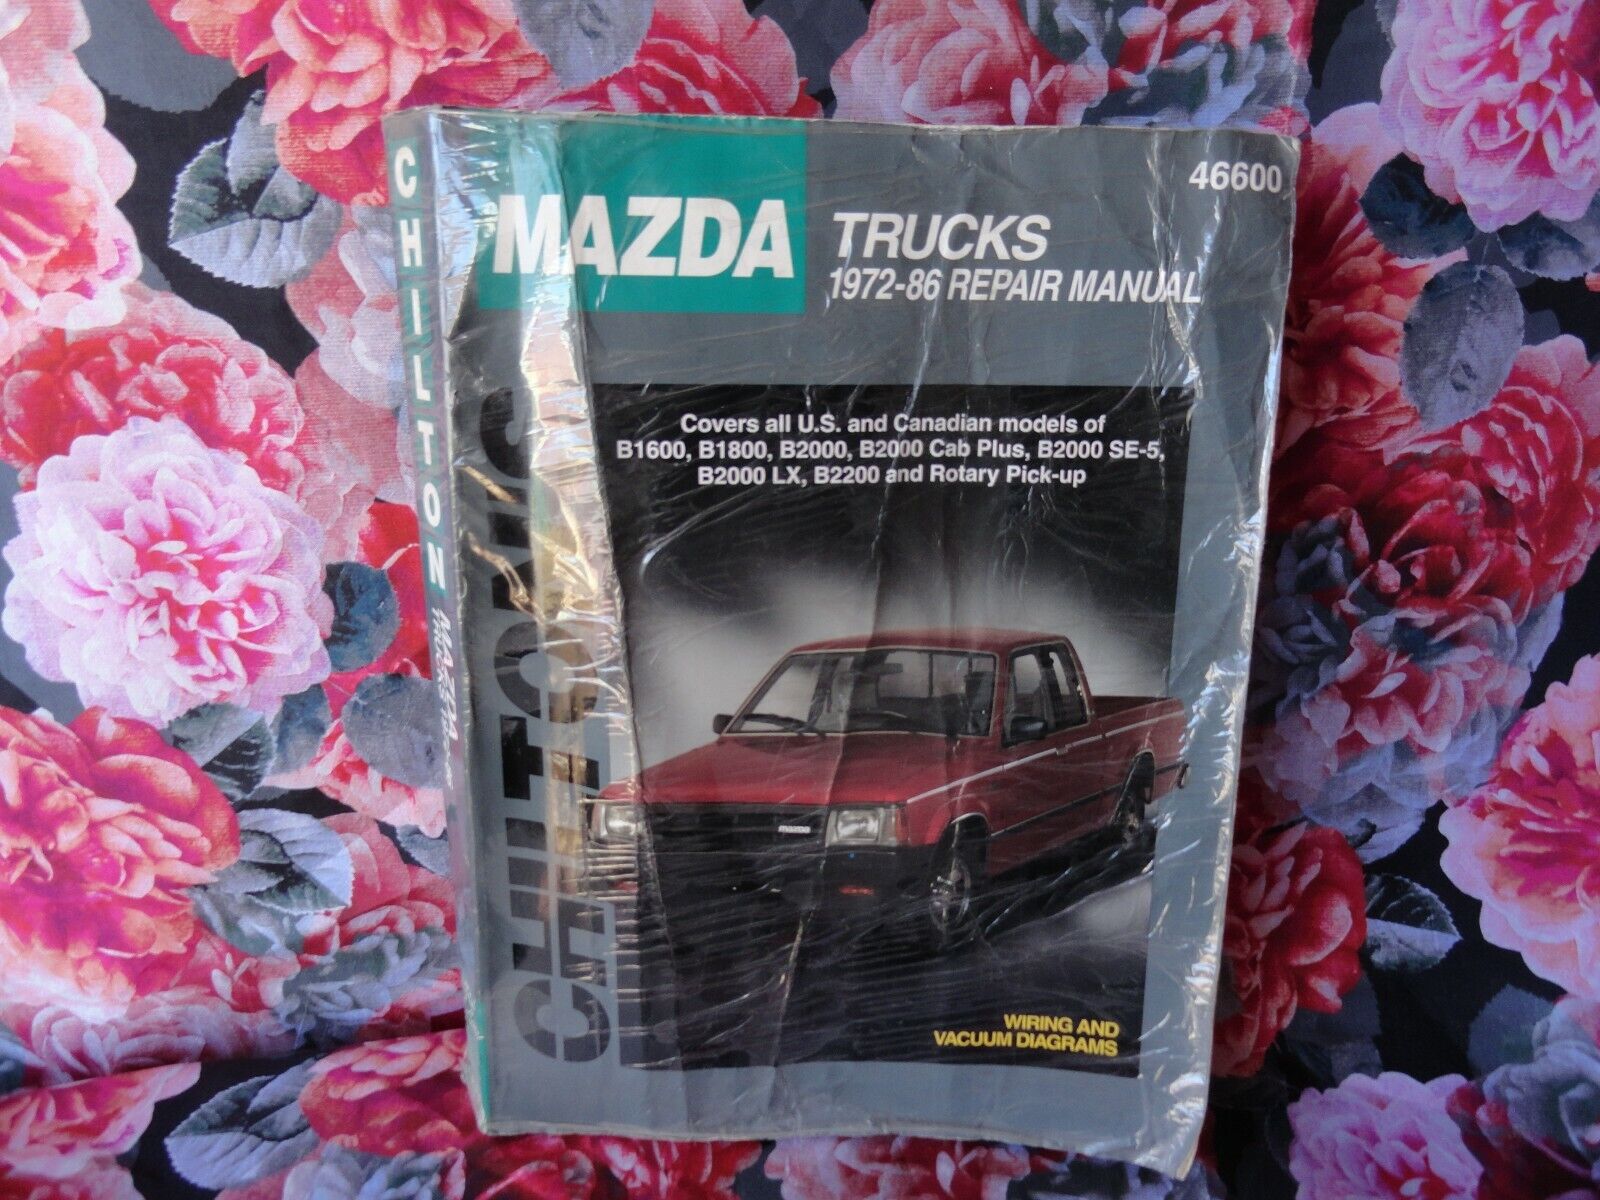 Chilton\'s Mazda Trucks 1972-86 Repair Manual Guide 46600 Book Total Car Care